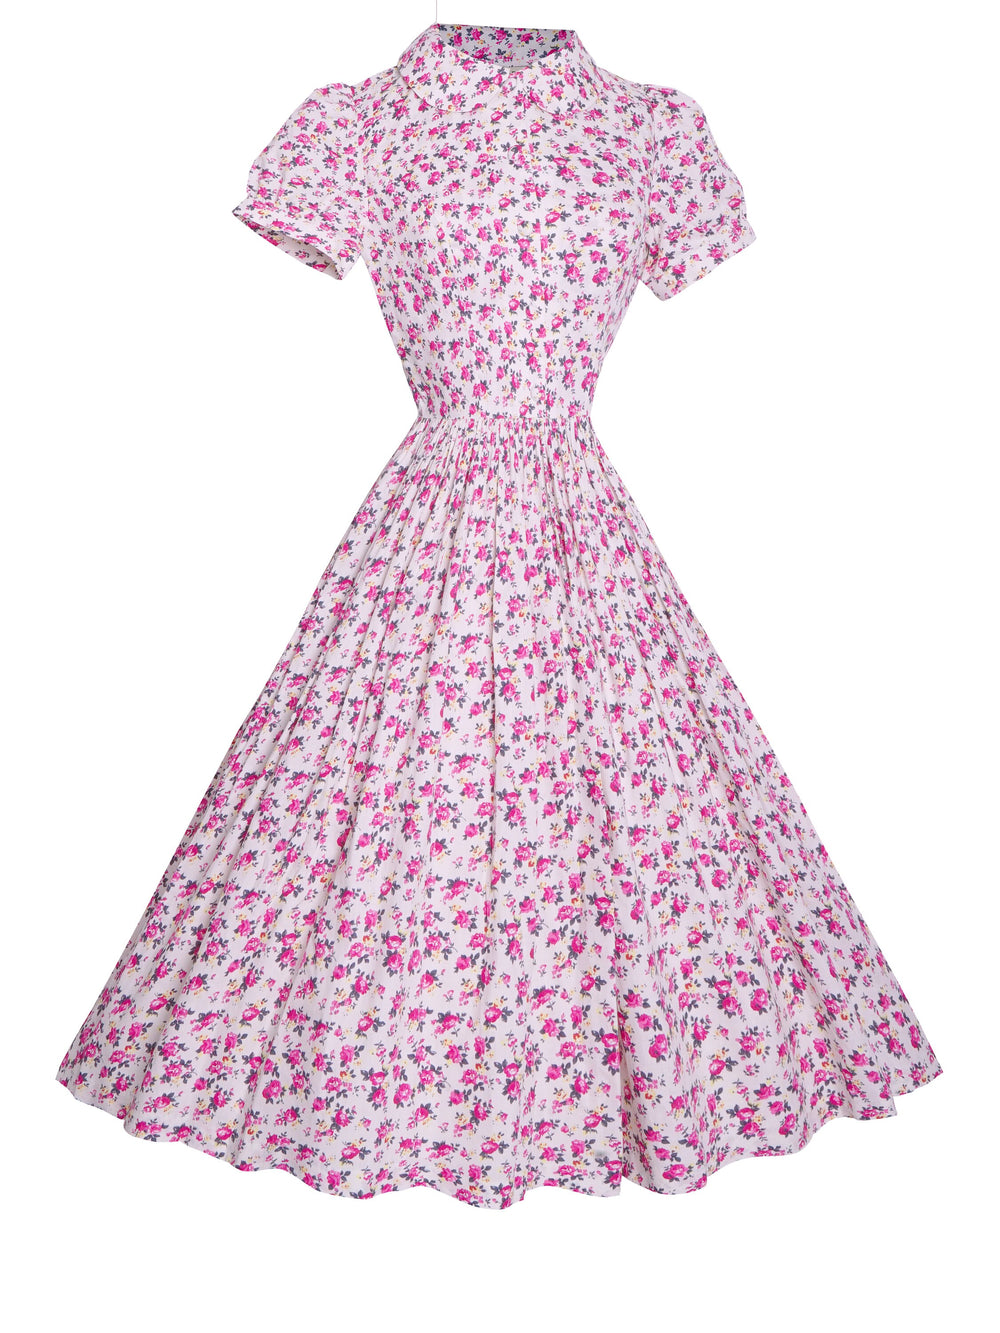 MTO - Amelie Dress "Duchess Floral"